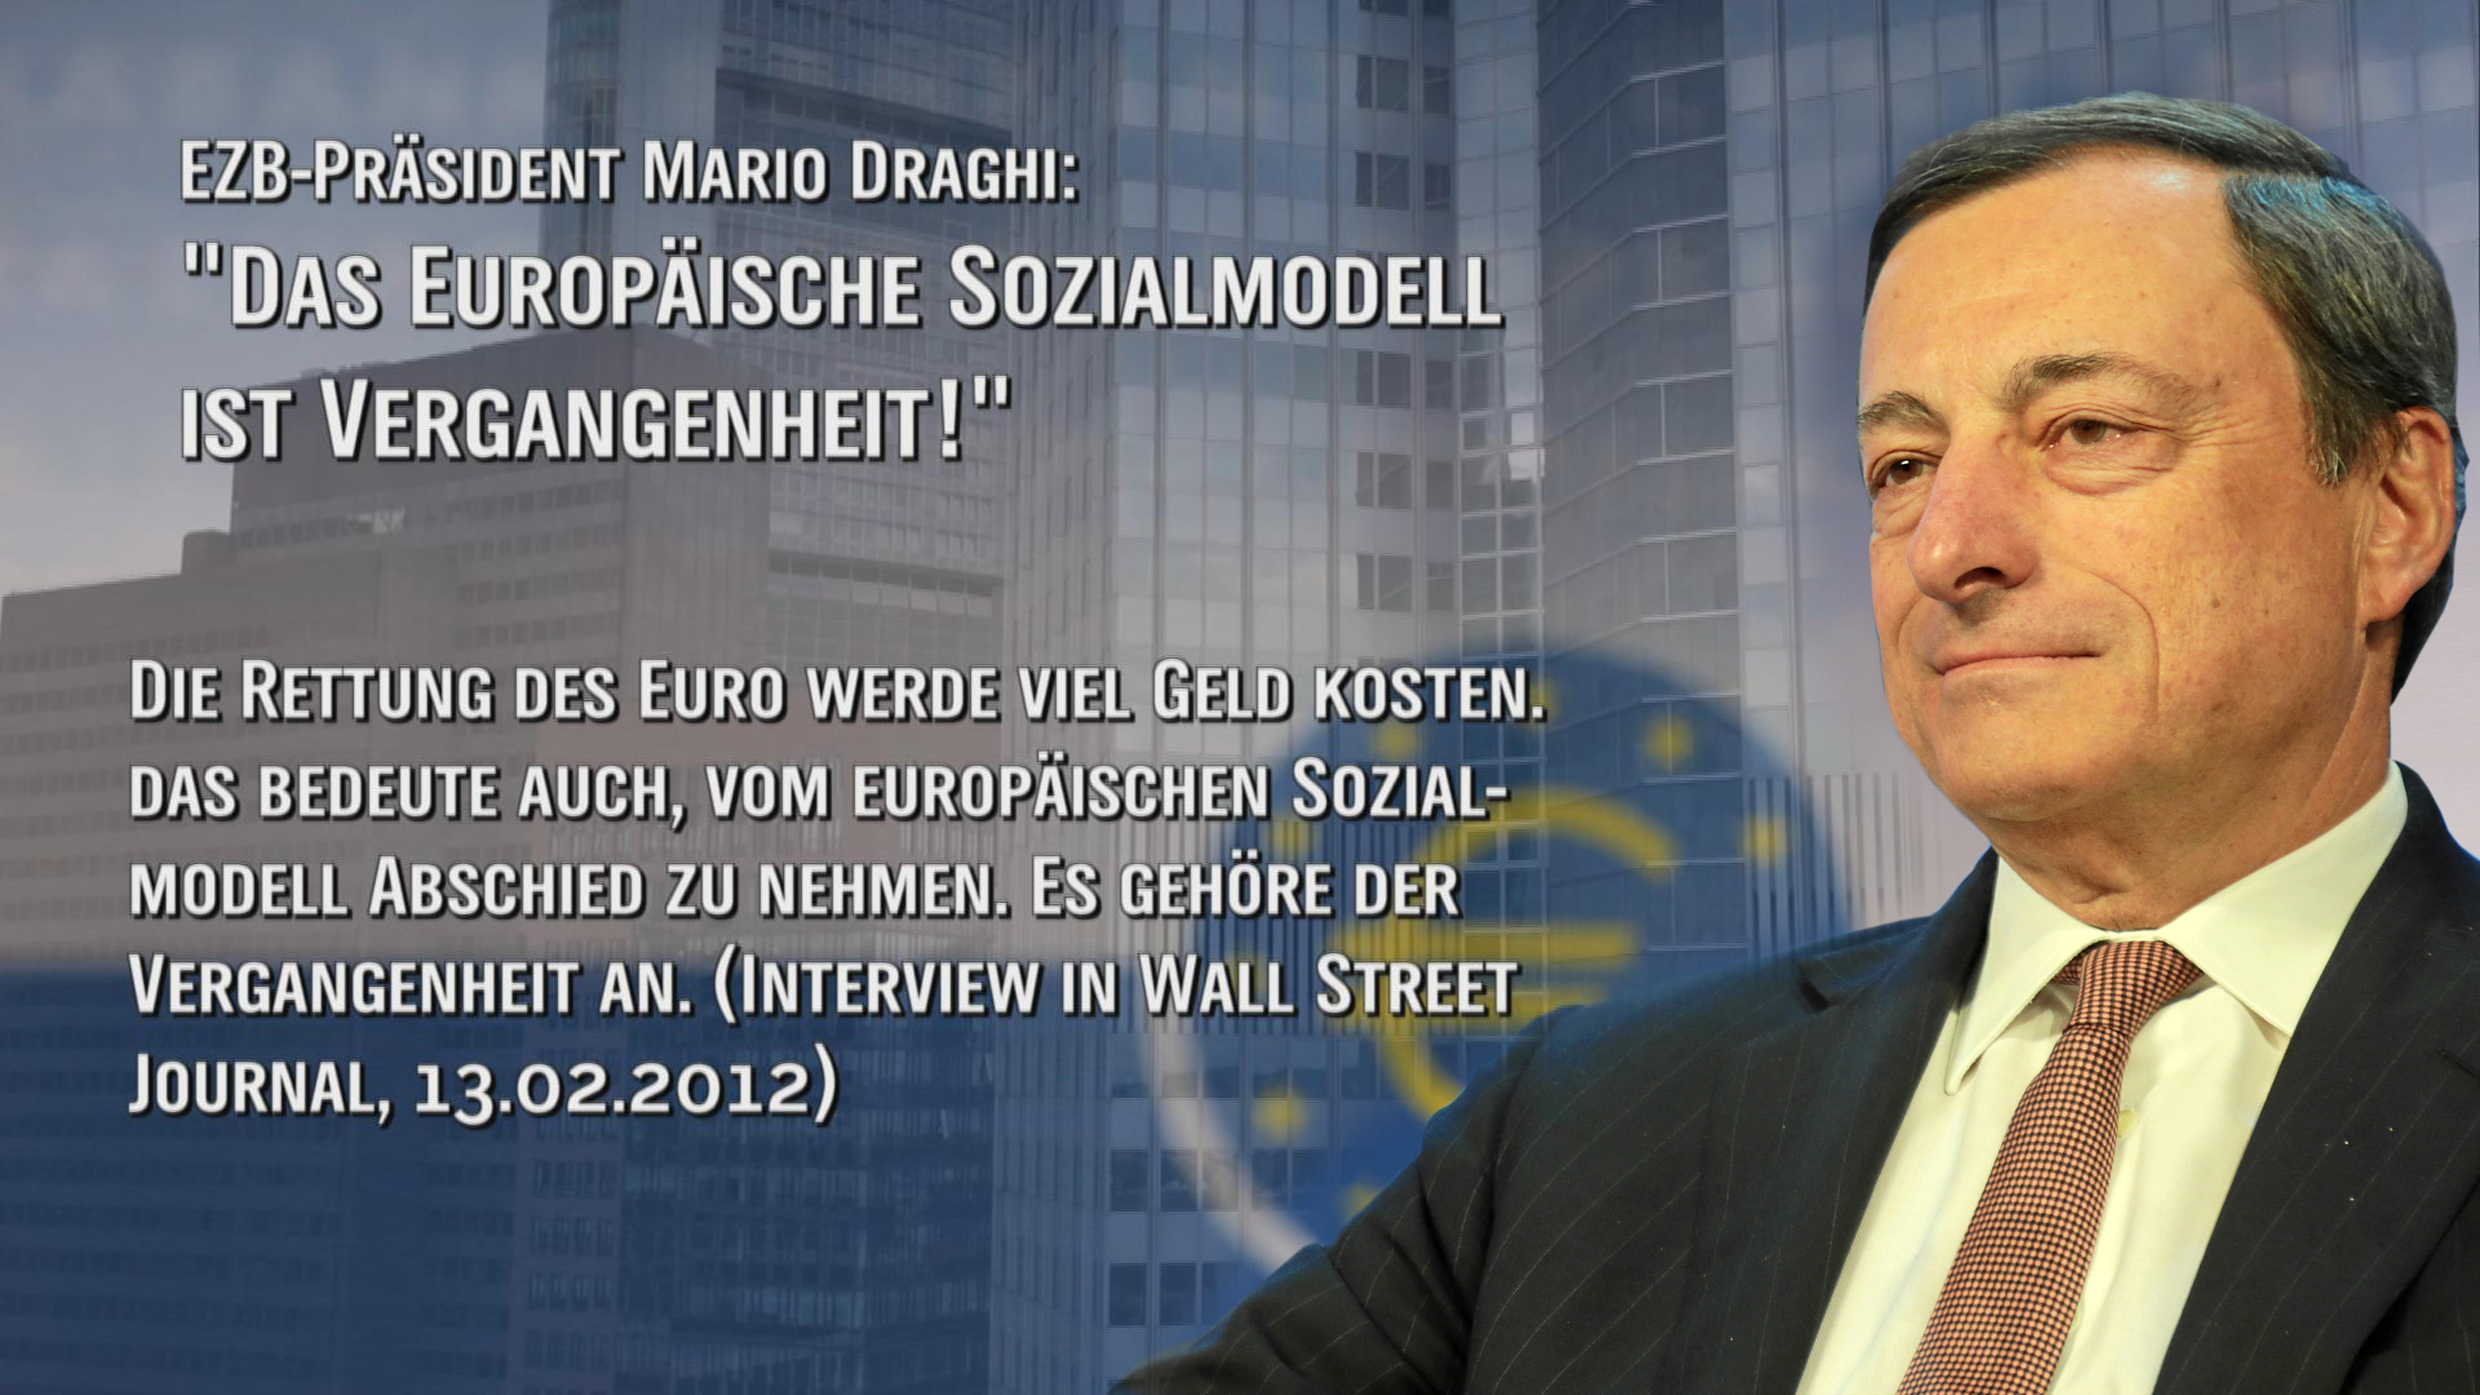 EZB-Prsident Draghi voher als Vize-Prsident von Goldman Sachs  Chef der Abteilung die die griechischen Schuldenmogelei organisierte